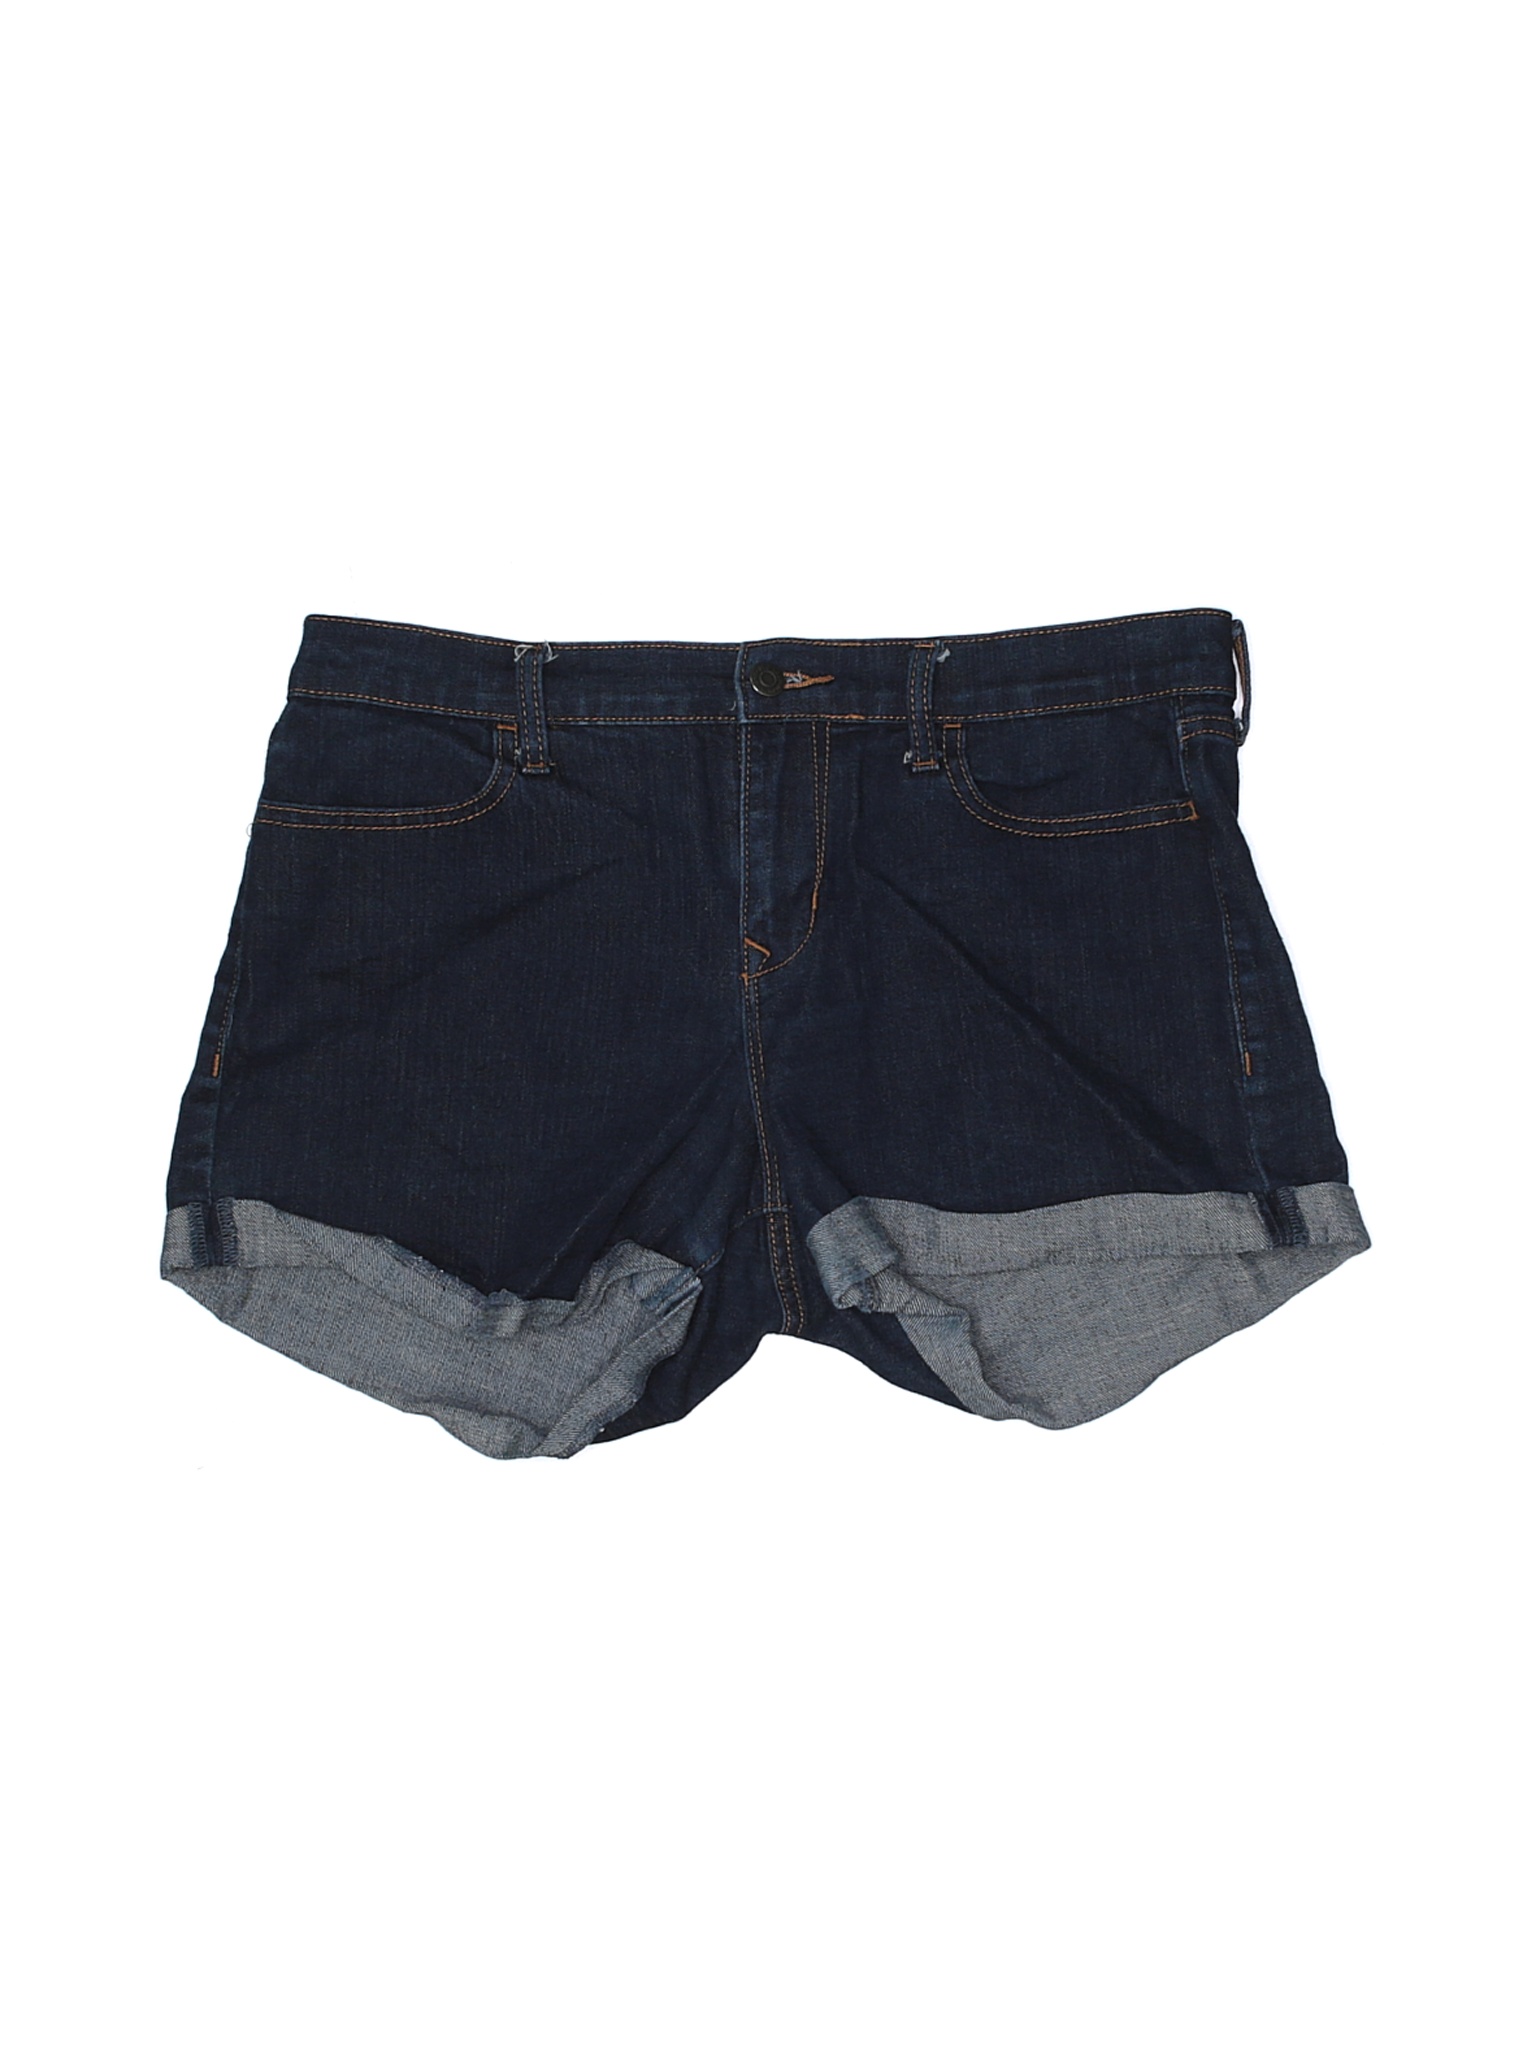 Old Navy Women Blue Denim Shorts 10 | eBay